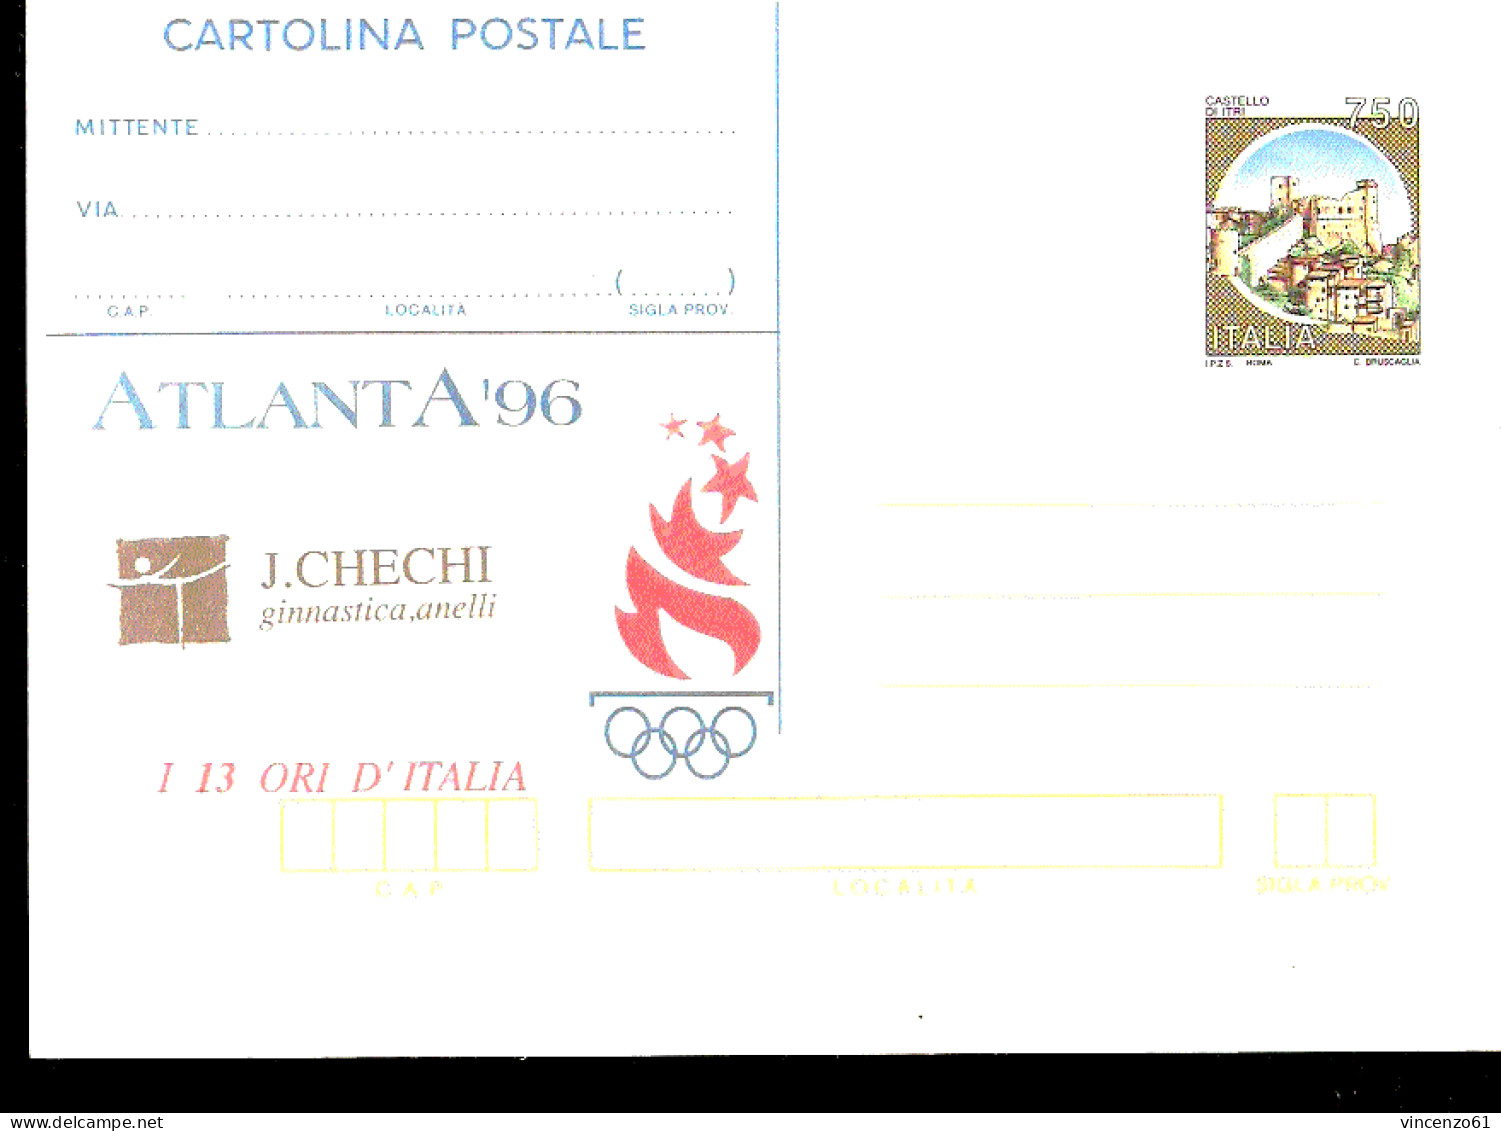 I 13 ORI D'ITALIA ALLE OLIMPIADI DI ATLANTA JURY CHECHI GINNASTICA ANELLI - Gymnastics